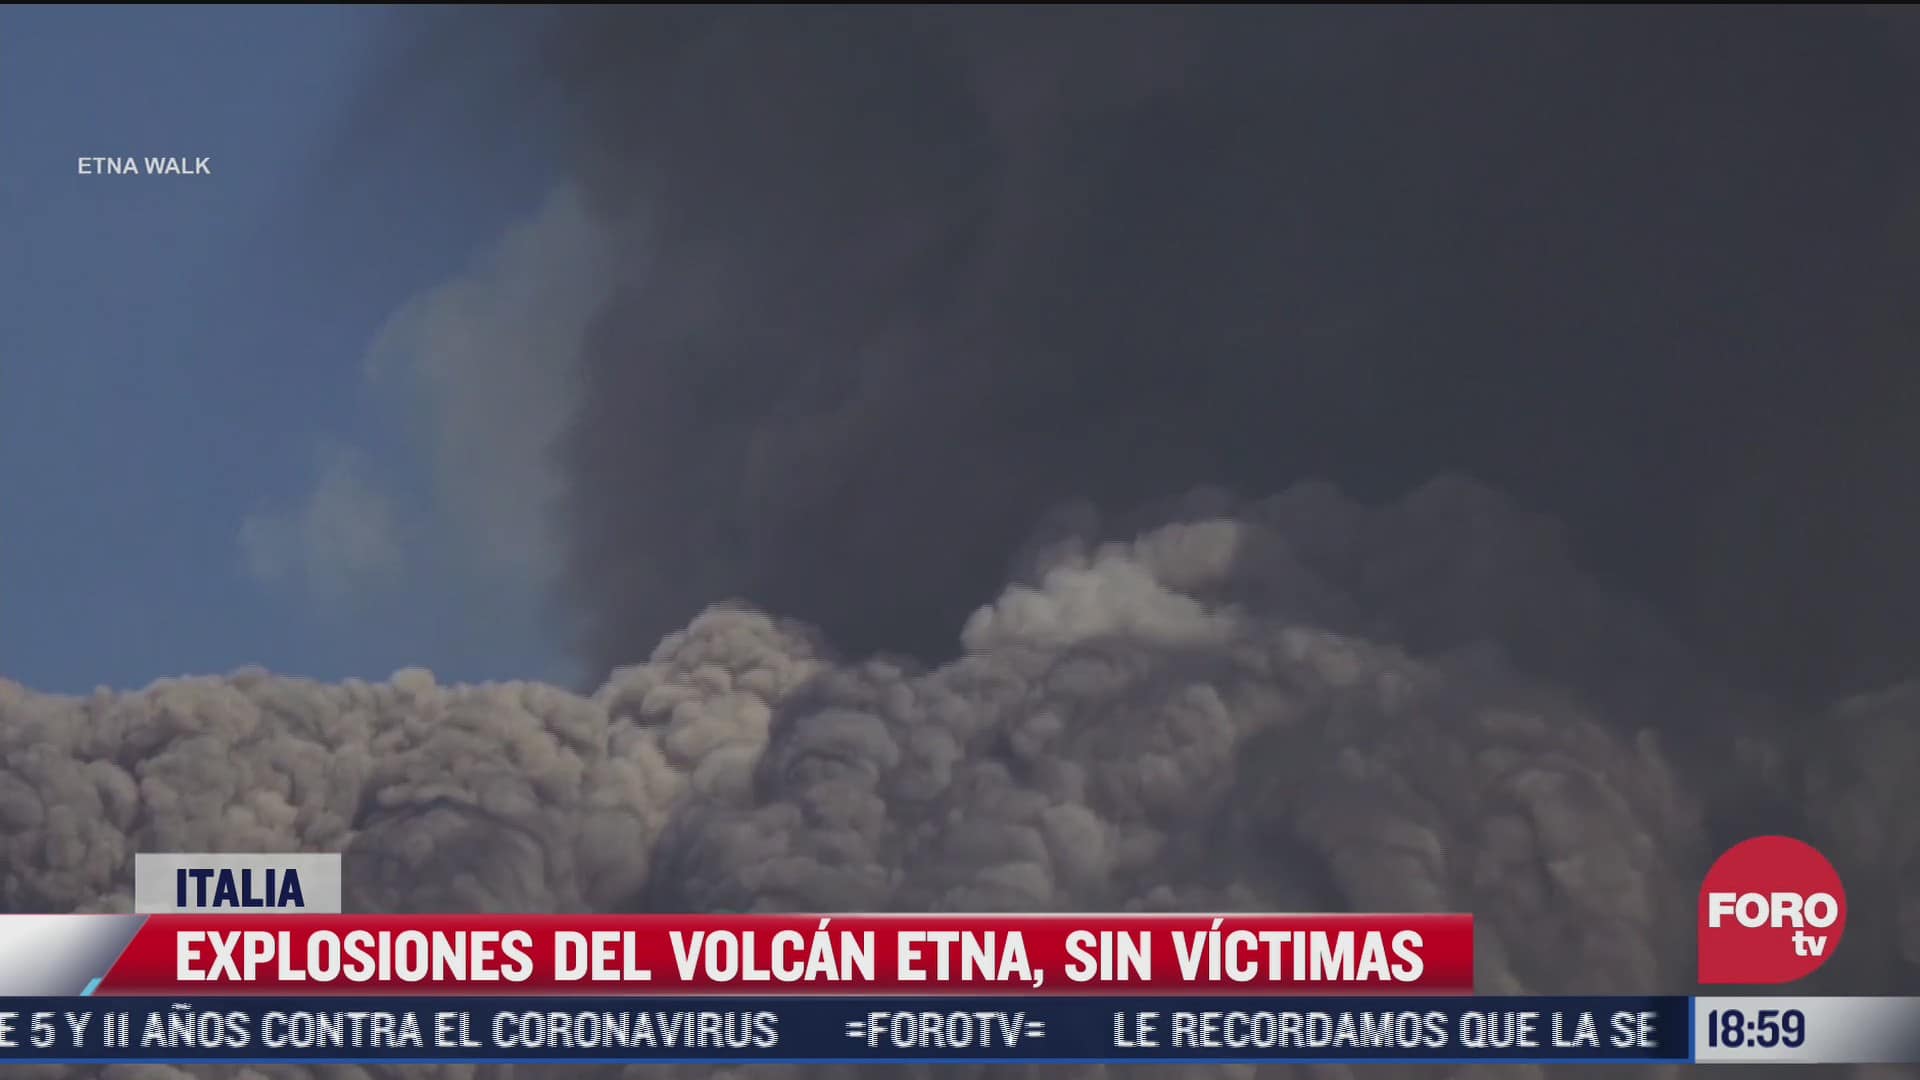 explosiones del volcan etna sin victimas en italia